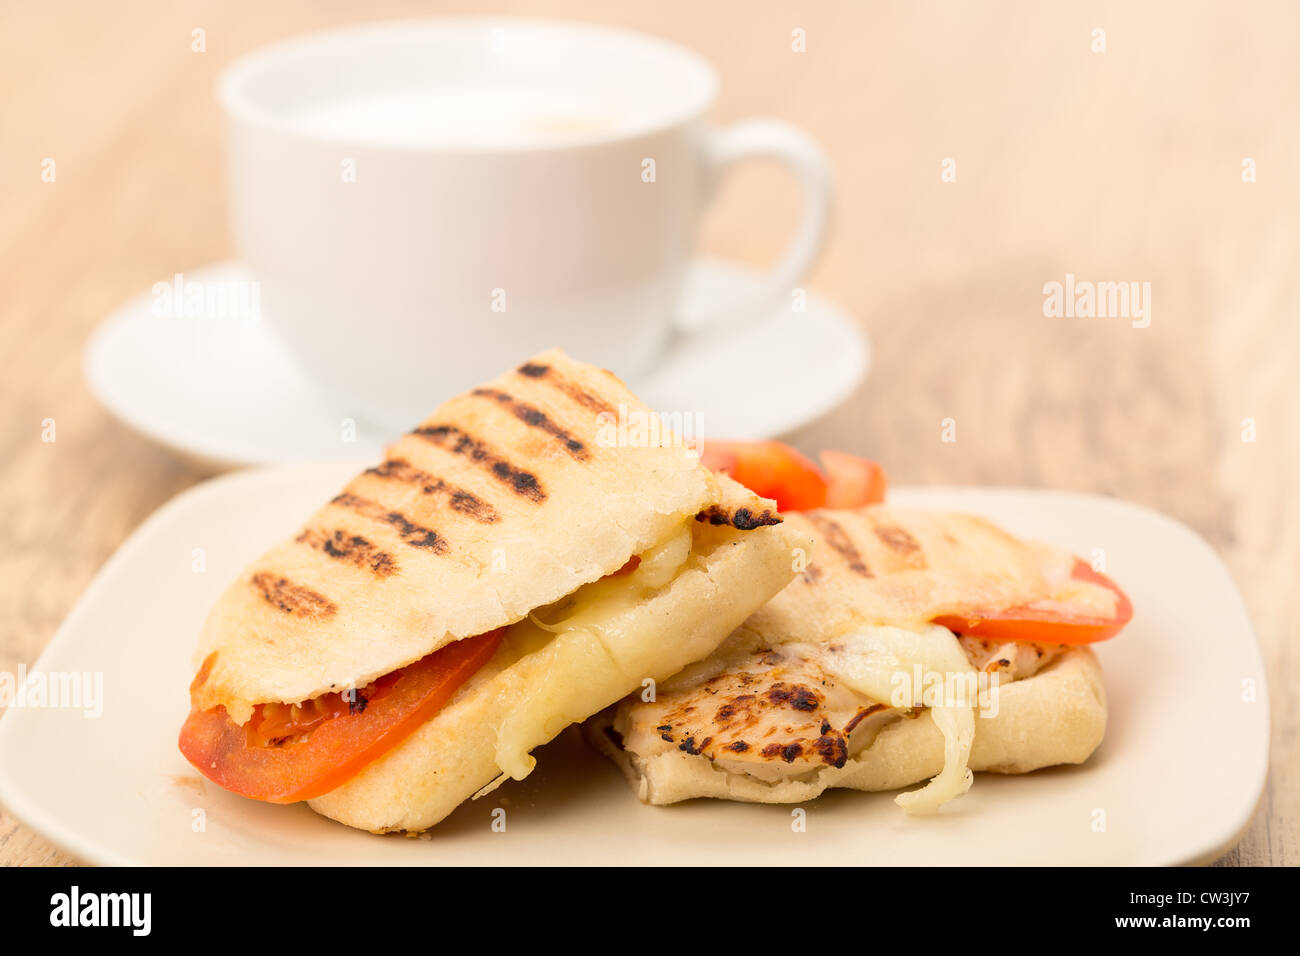 Pollo tostato, pomodoro e mozzarella Panini sandwich che è stato tagliato a metà e posto su una piastra Foto Stock